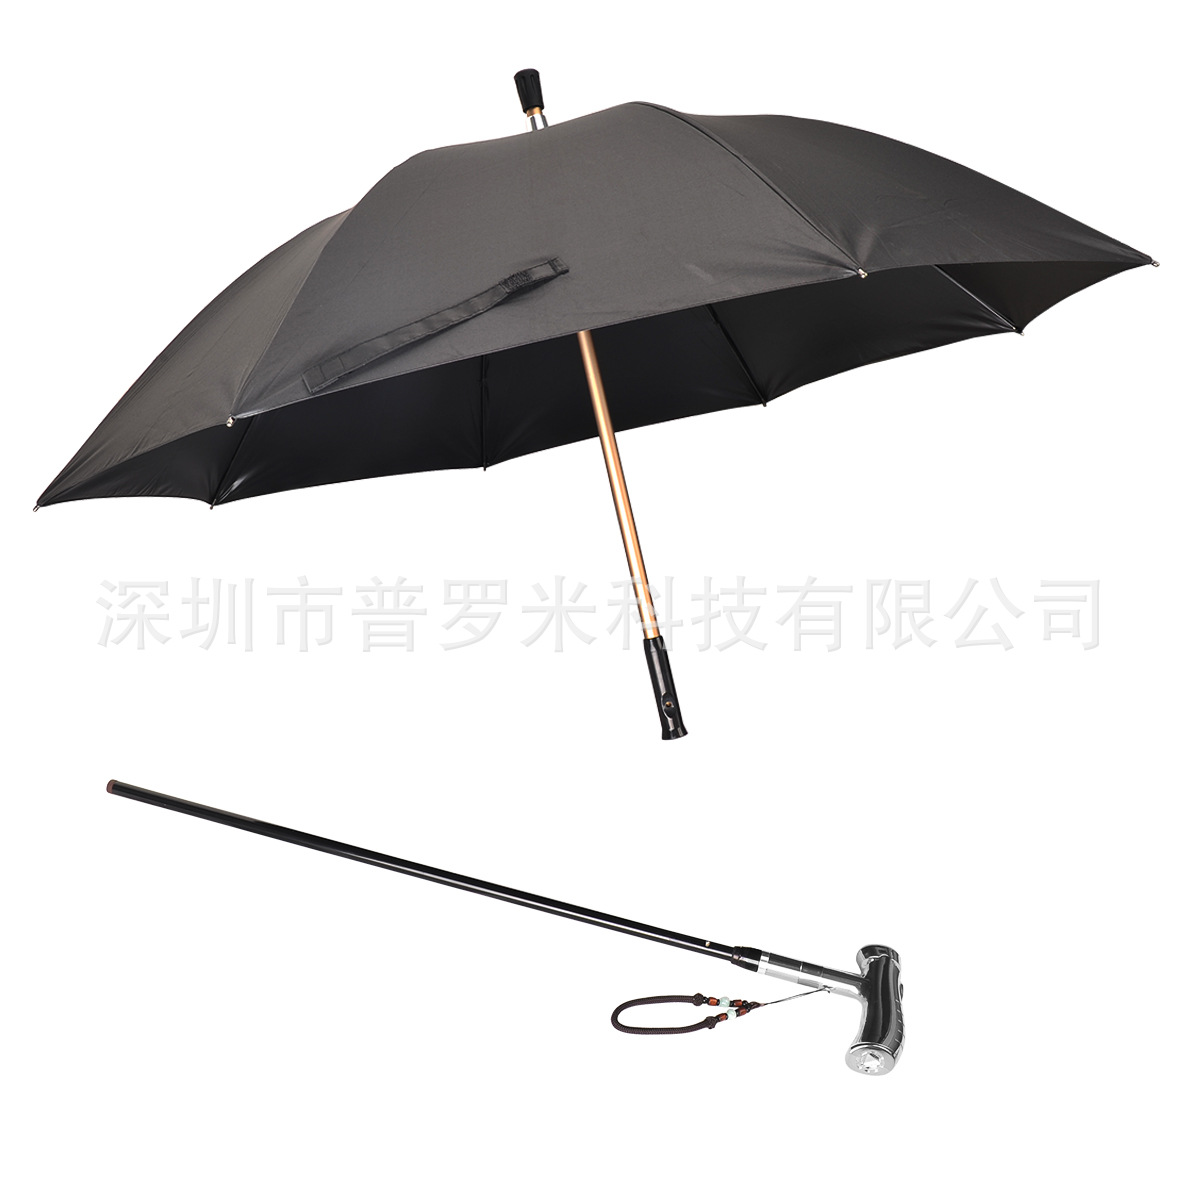 遇险报警 家人的保护伞智能拐杖雨伞一伞多用 手摇发电拐杖雨伞3